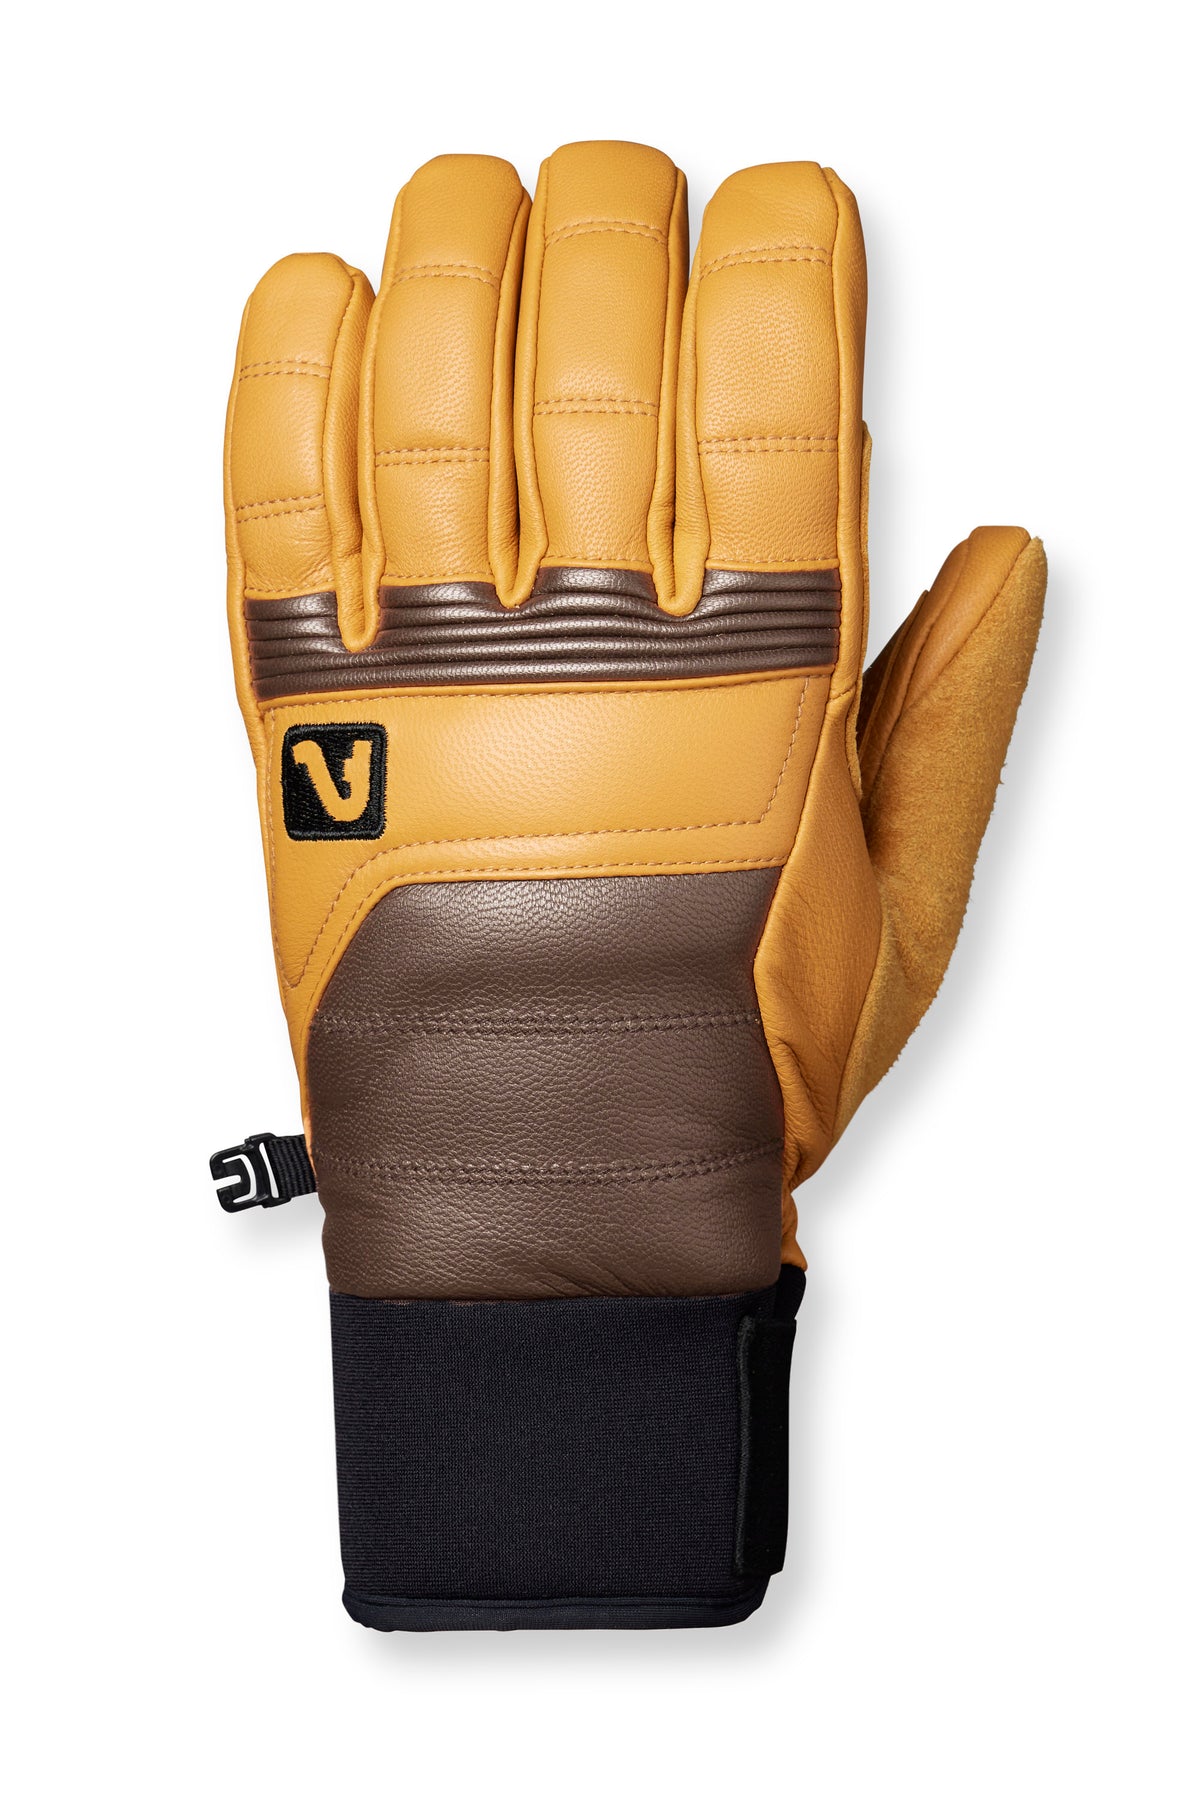 Wolverine Glove